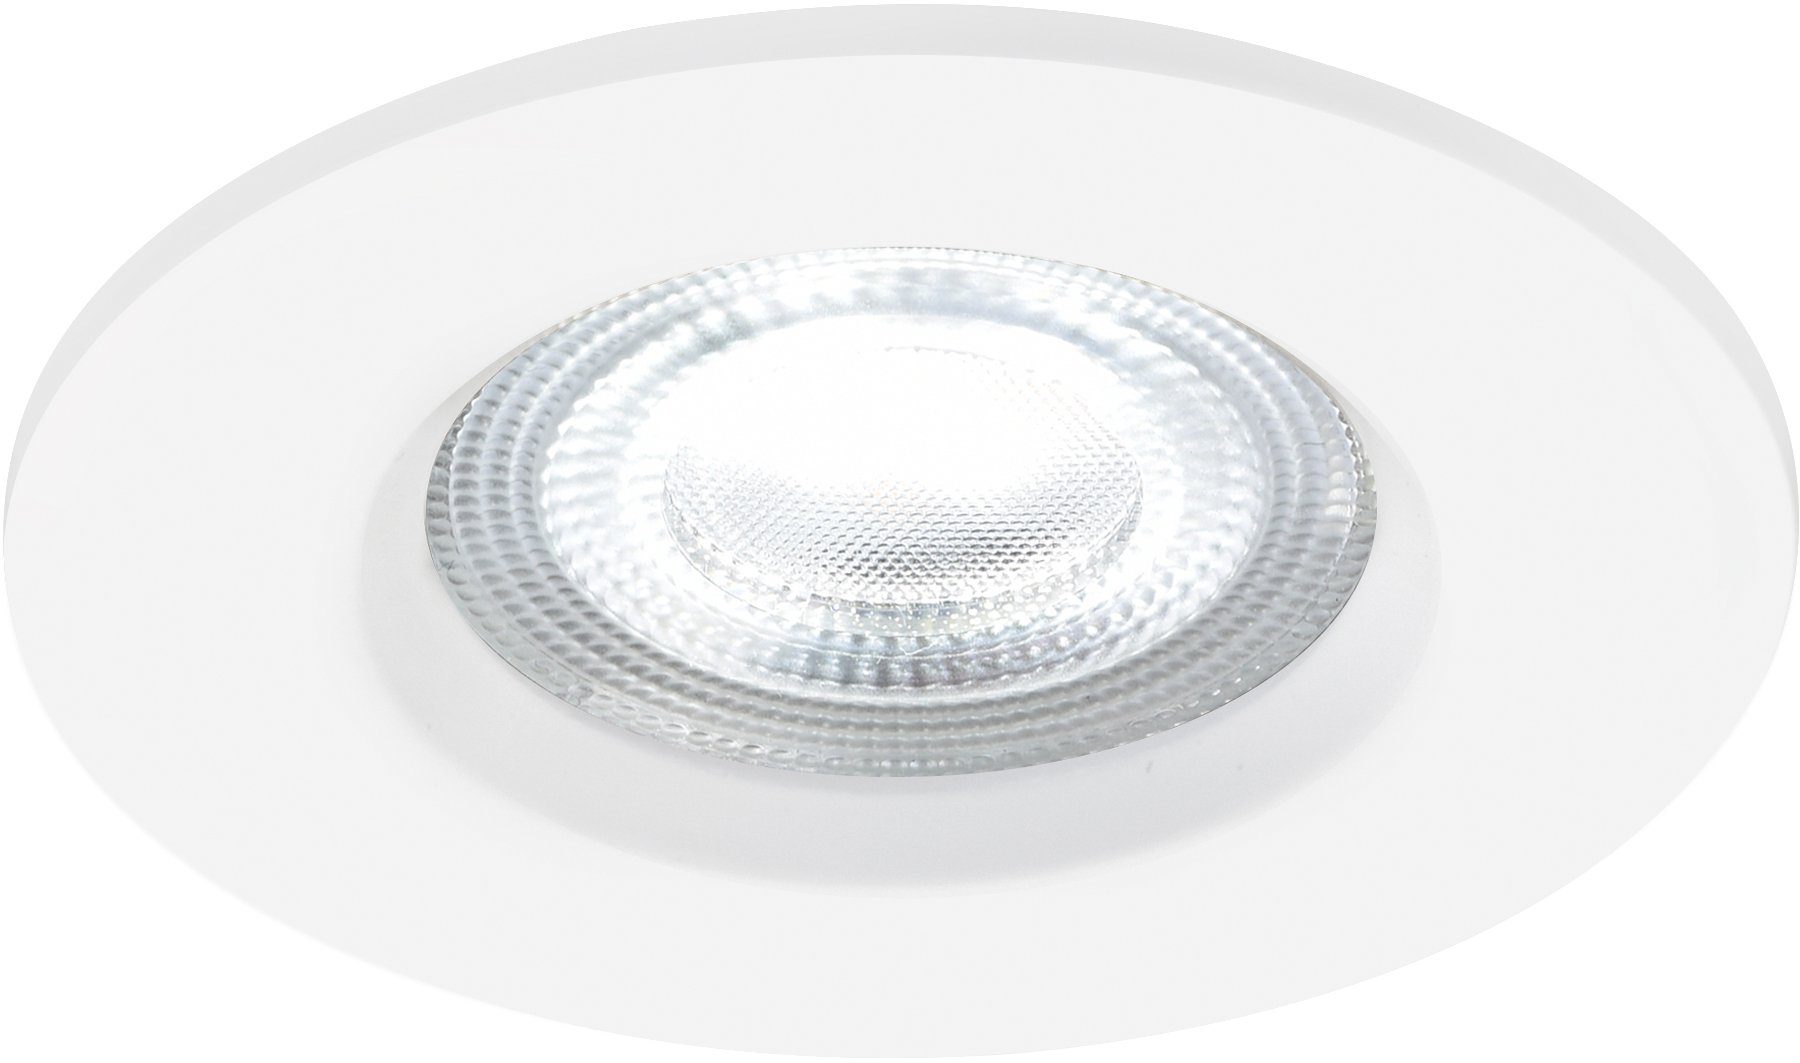 Nordlux Smarte LED-Leuchte Smartlicht, LED fest integriert, warmweiß - kaltweiß, inkl. 4,7W LED, 320 Lumen, Dim to Warm, Smarte Leuchte | Alle Lampen